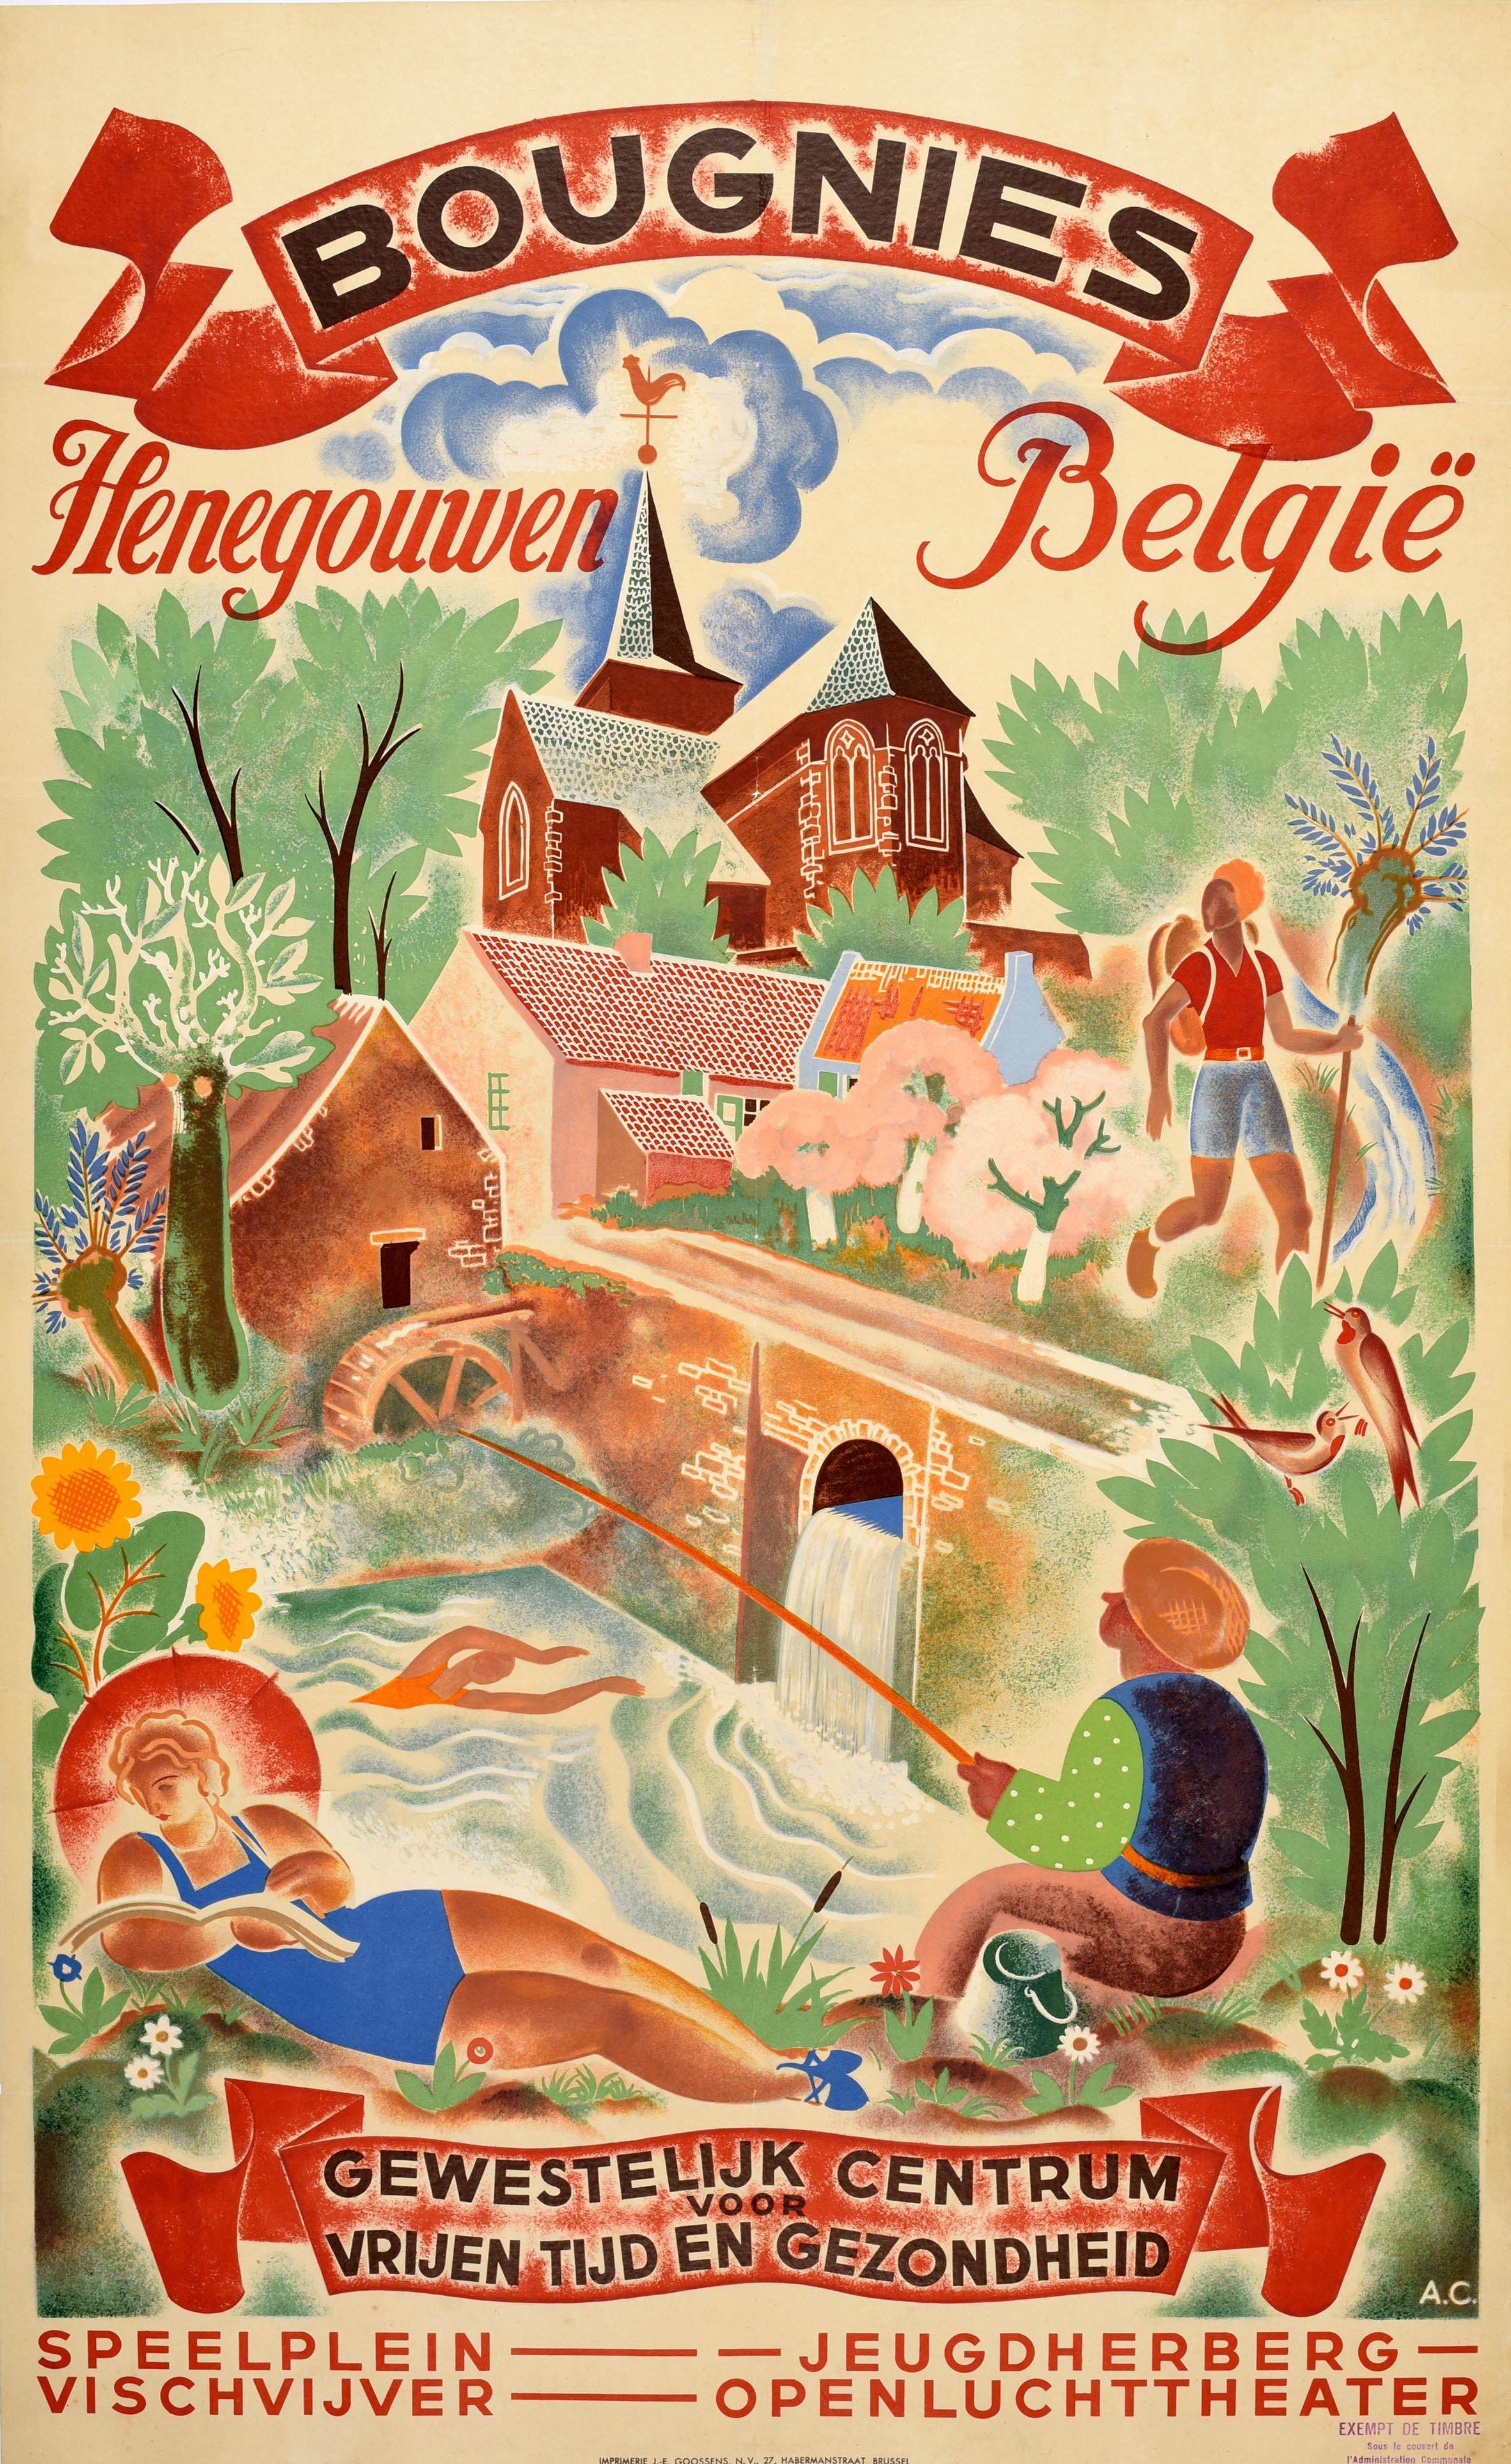 Print Unknown - Affiche de voyage vintage d'origine de Bougnies Henegouwen, Belgique, Sport et loisirs